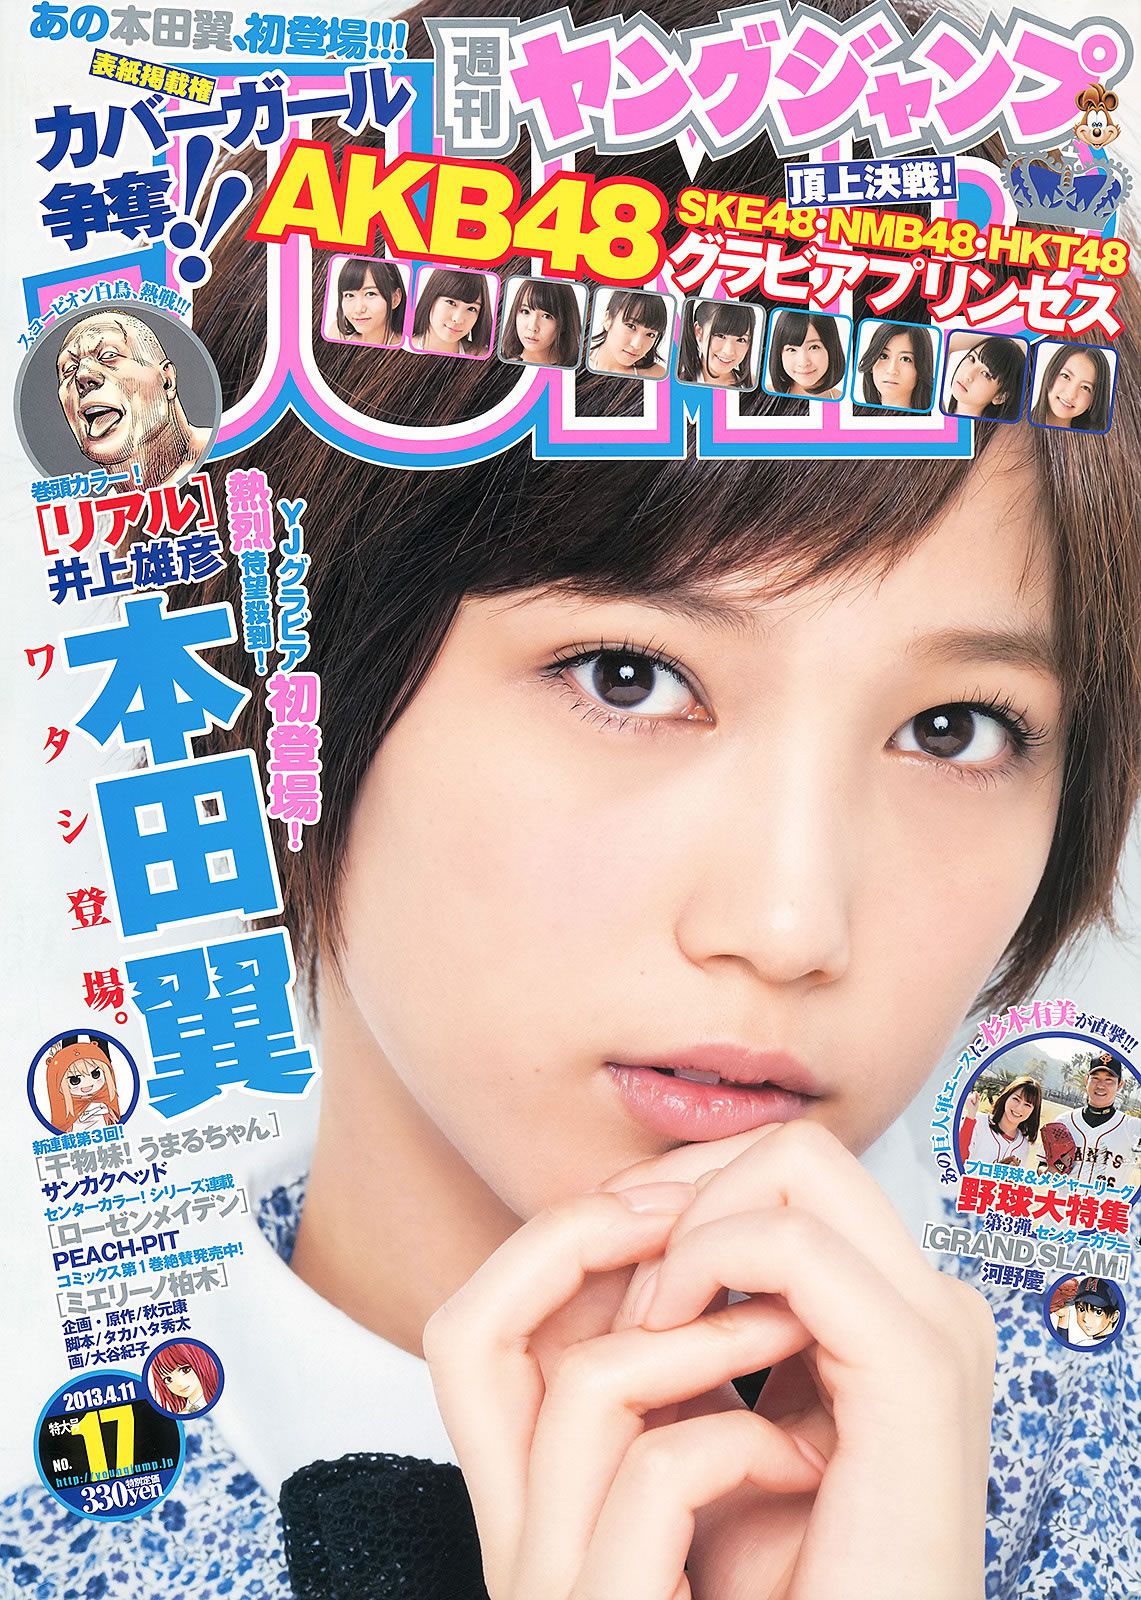 [Weekly Young Jump] 2013 No.16 17 本田翼 杉本有美 逢沢りな HKT48 [24P]